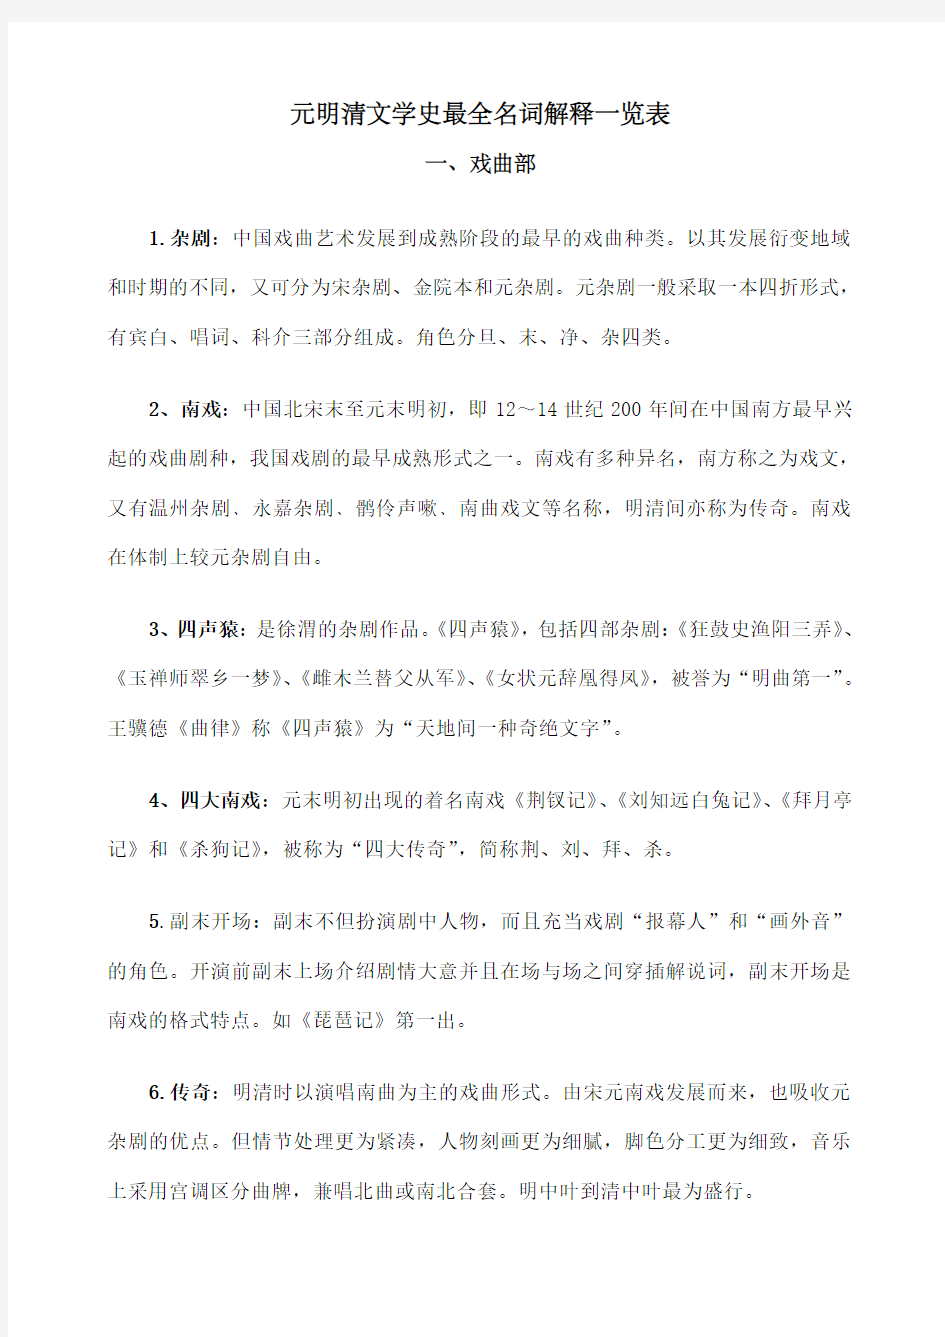 元明清文学史 名词解释一览表